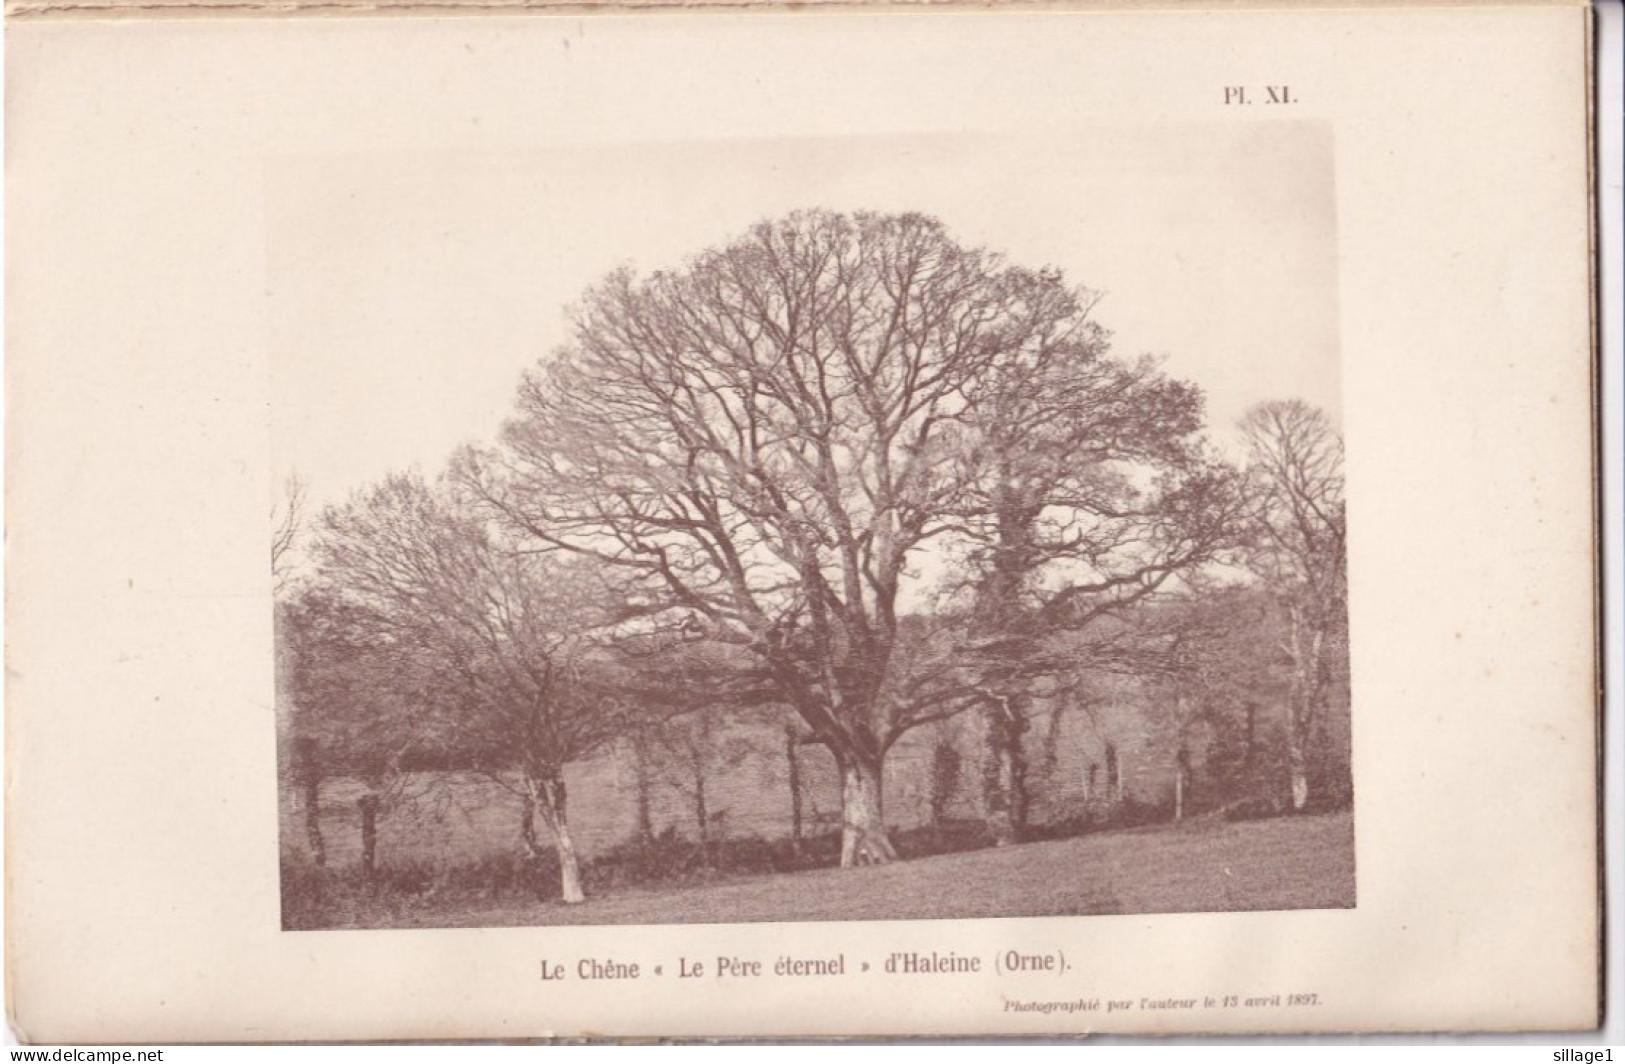 Haleine (Orne 61) Le Chêne " Le Père éternel " D'Haleine  (Orne) - Photographié Le 13 Avril 1897 - Other Plans